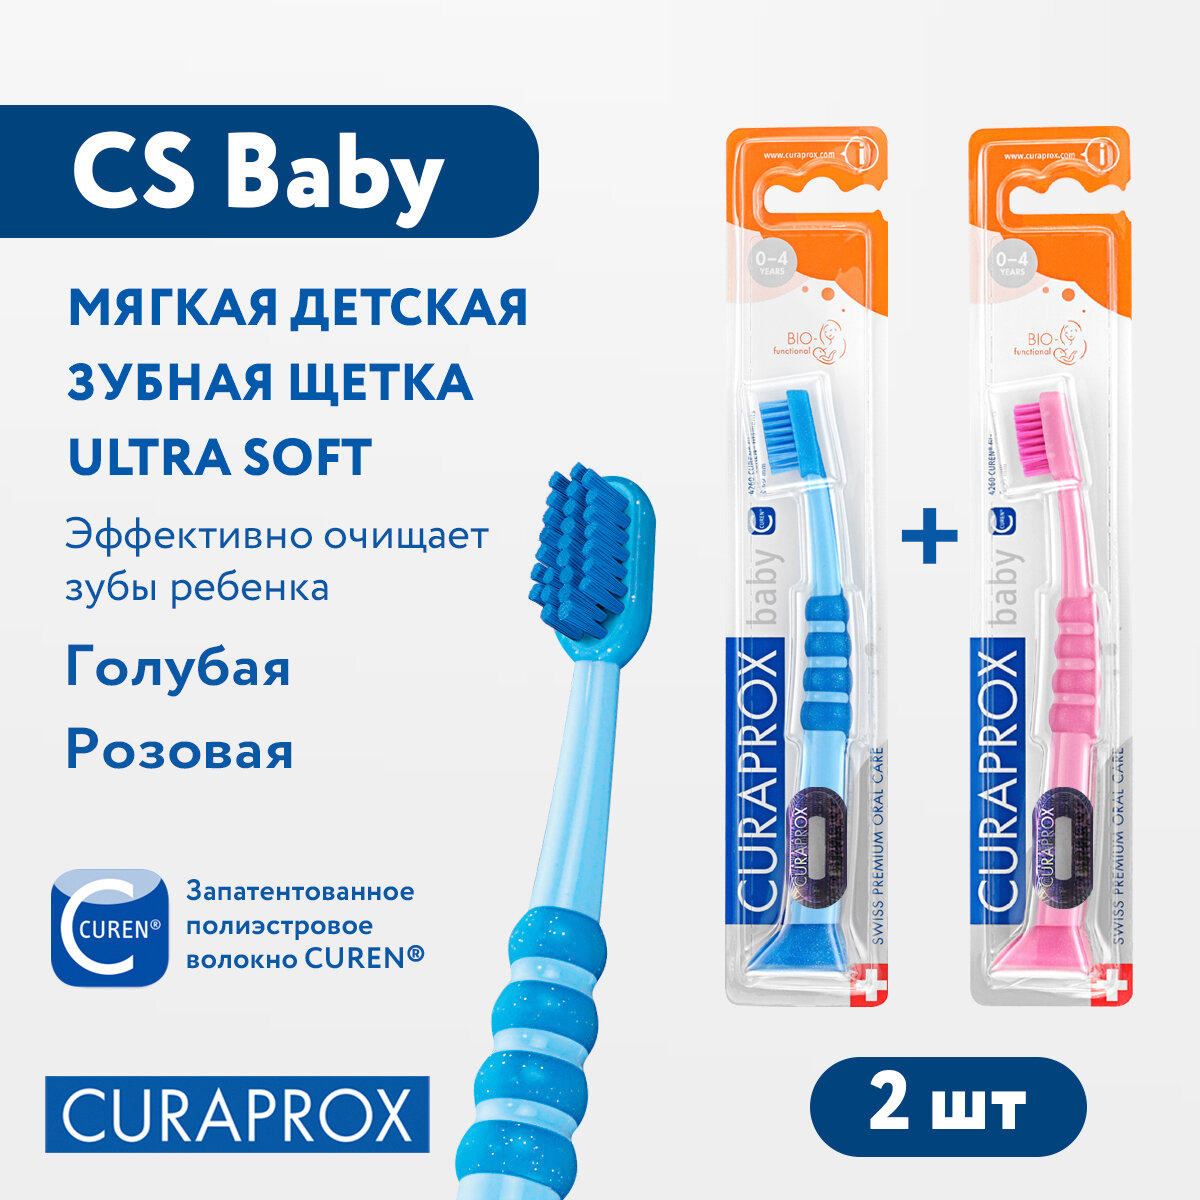 Набор детских зубных щеток Curaprox (2 шт.) c гуммированной ручкой серия Baby (розовая и голубая)